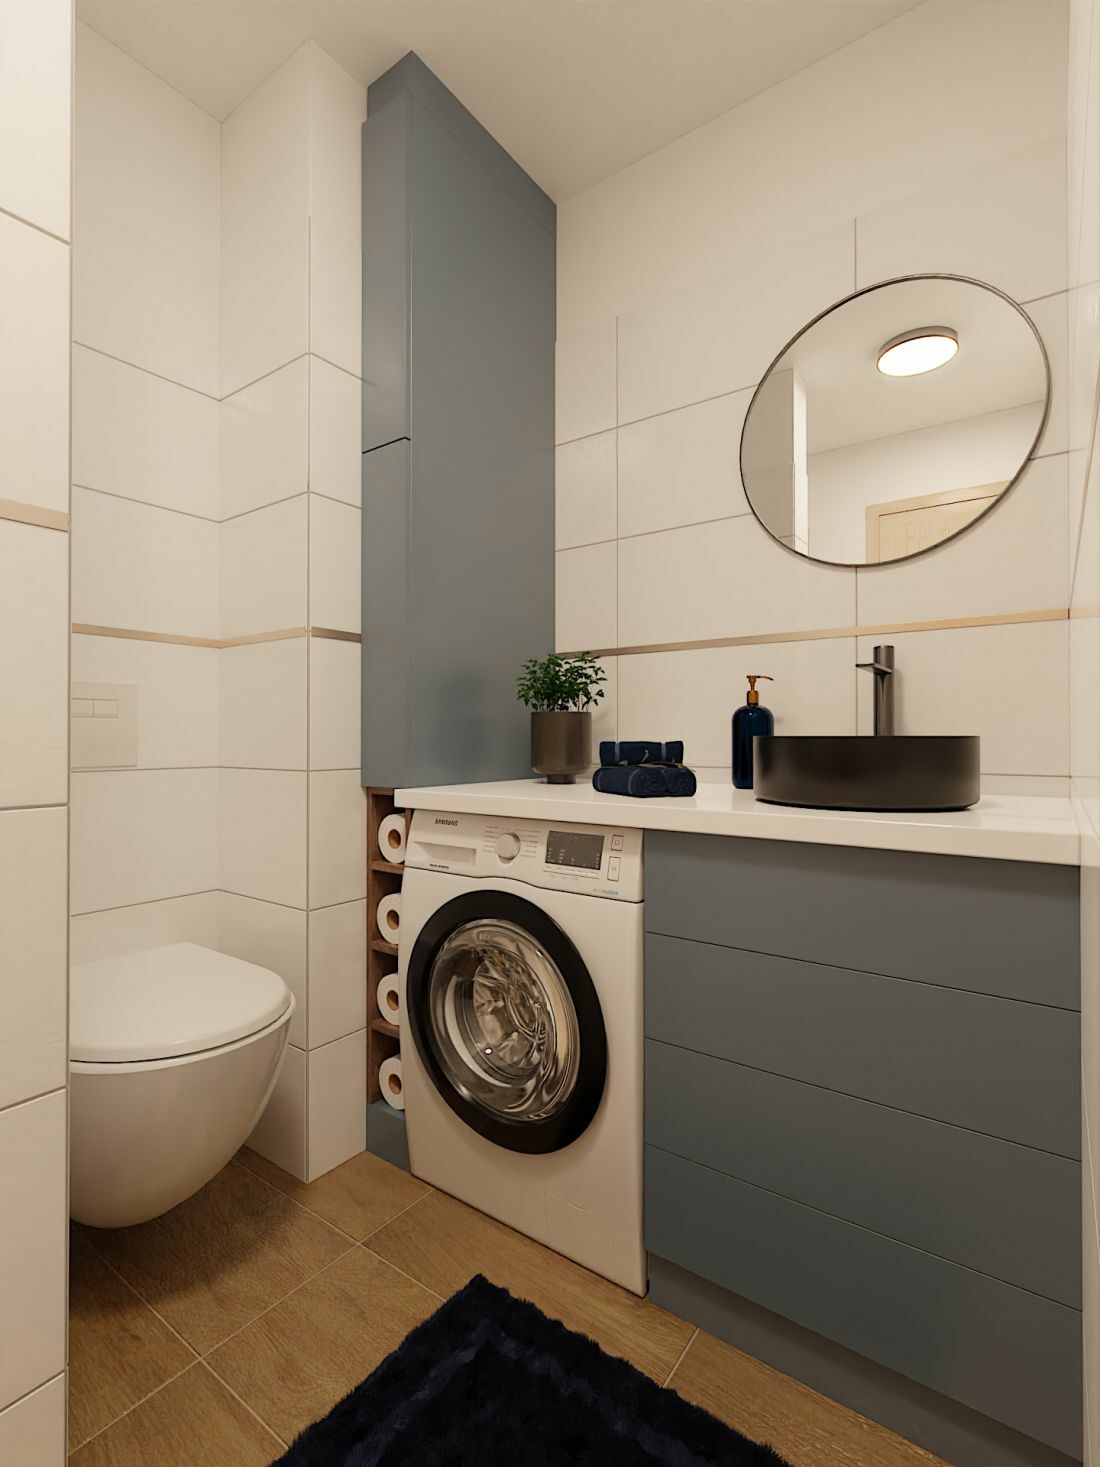 Egyedi tervezésű fürdőszobai bútorok és modern csempe ötlet